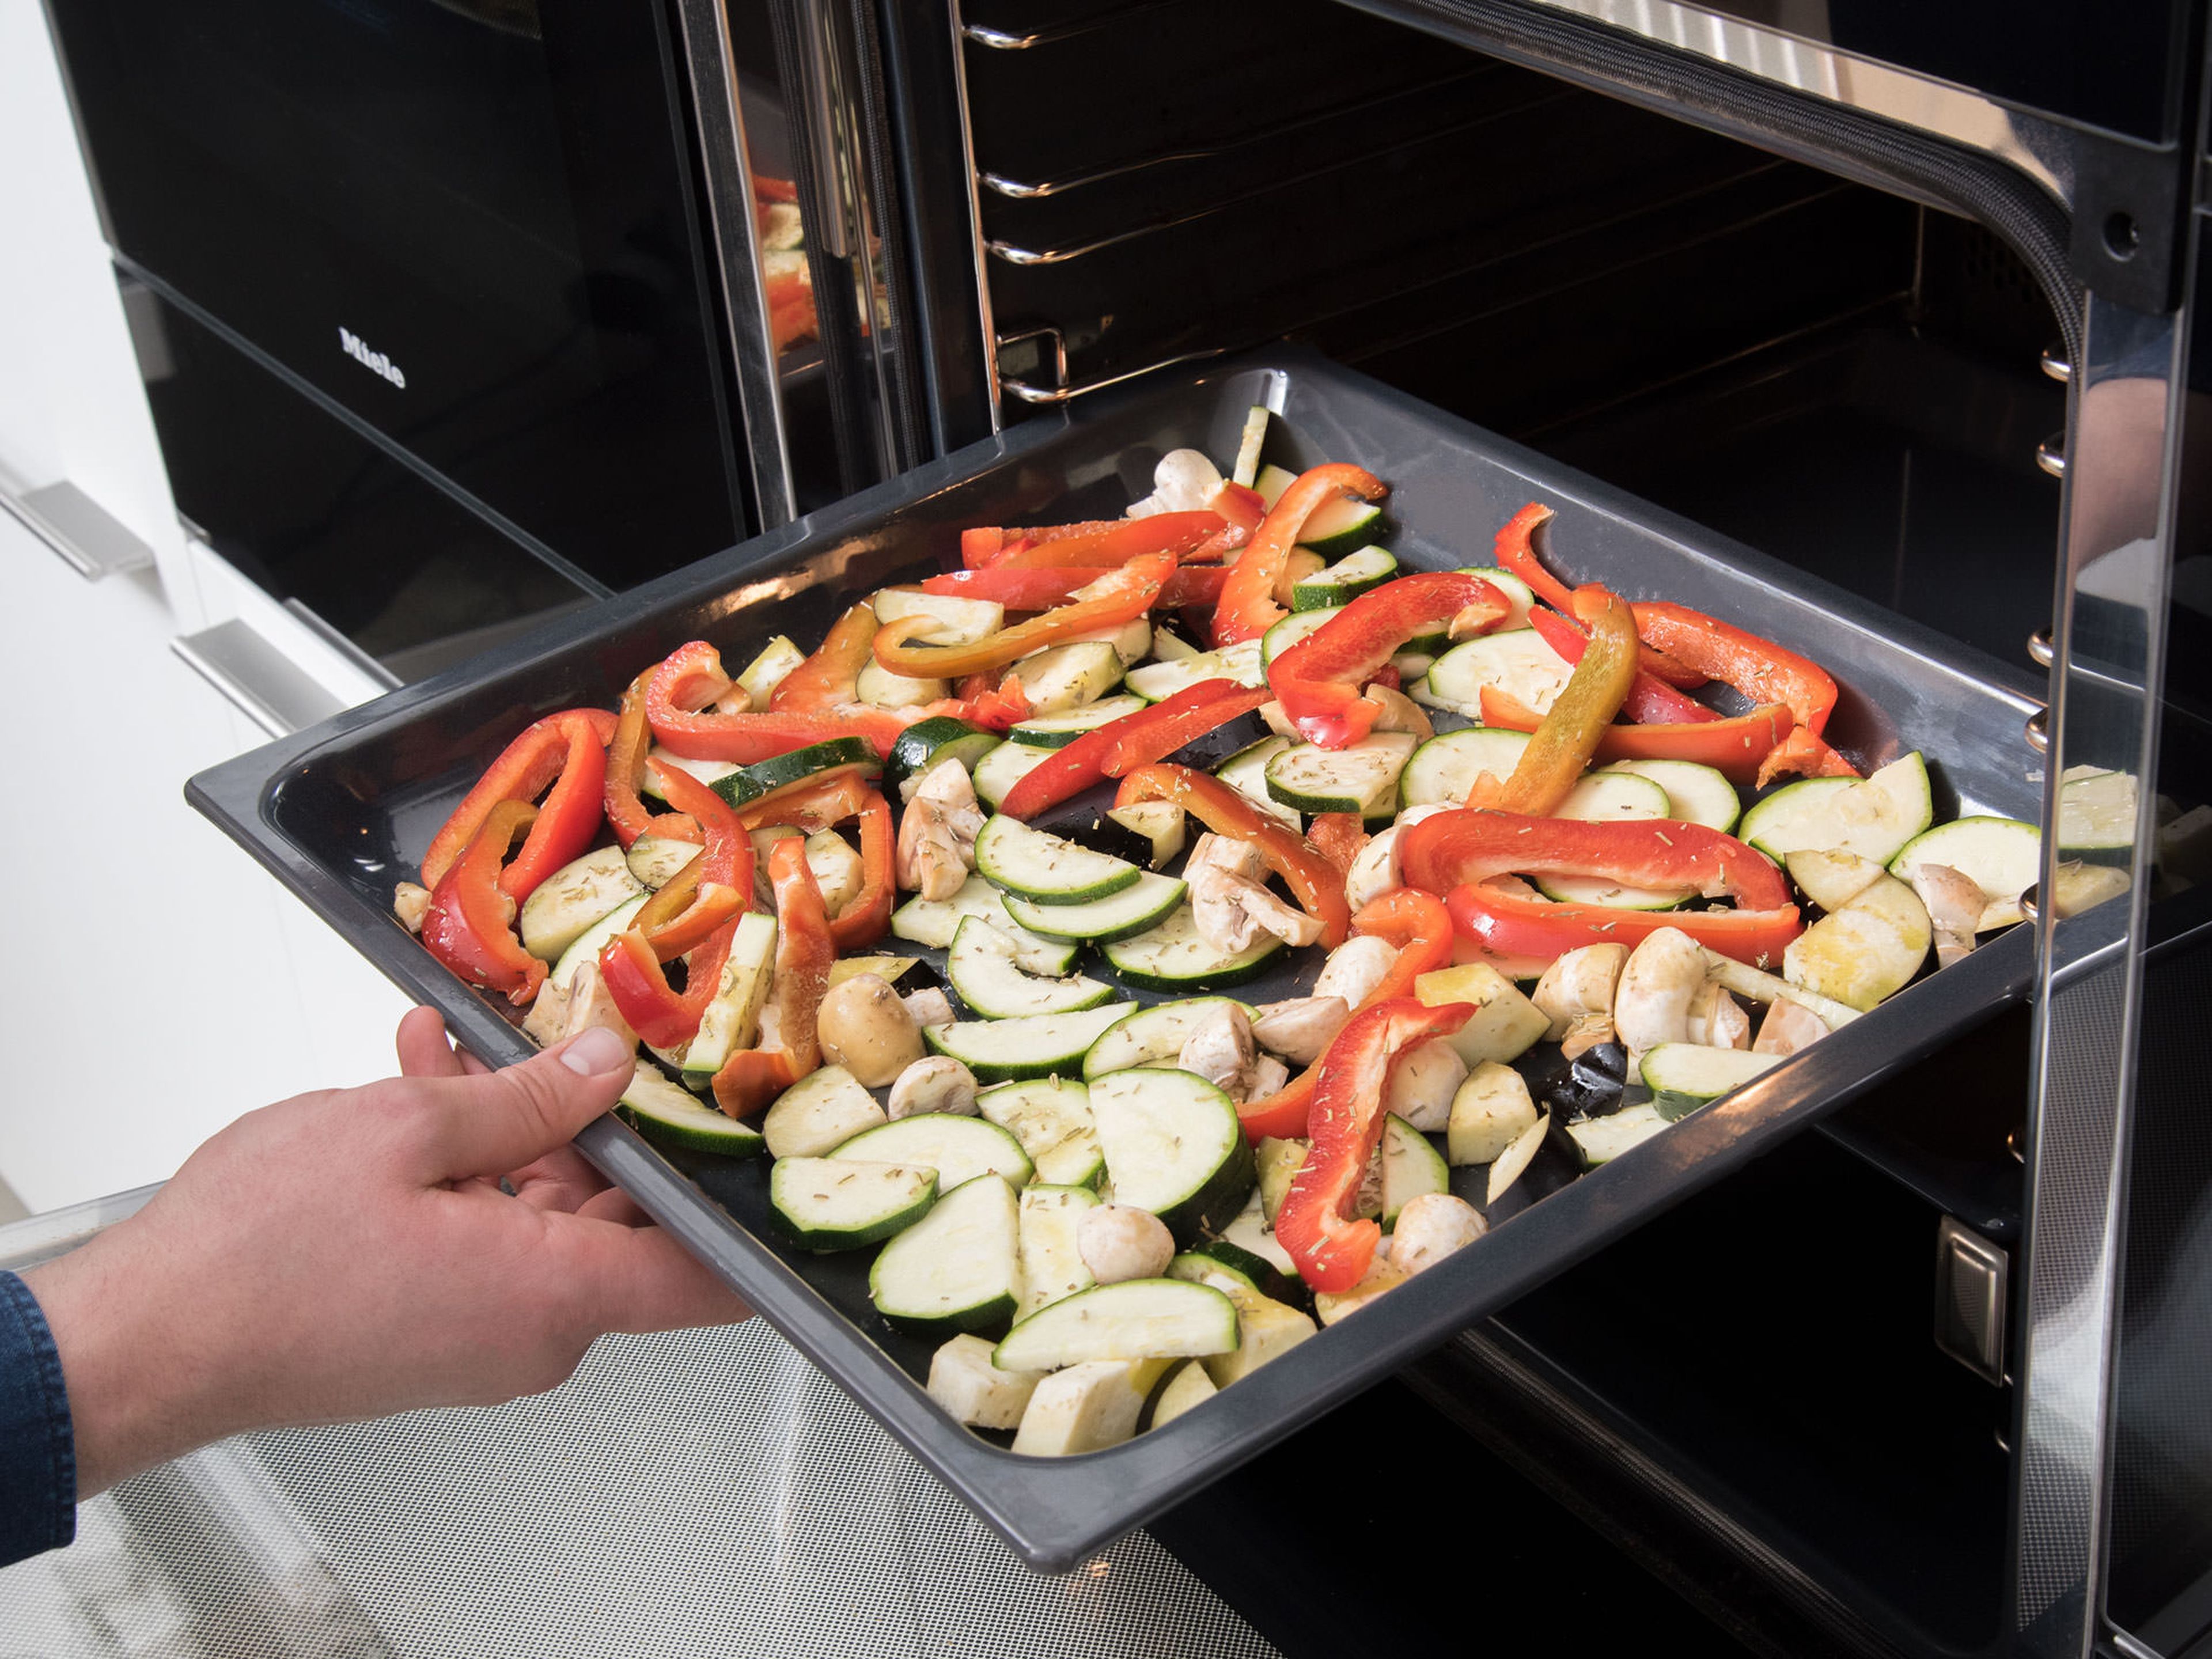 Olivenöl, Rosmarin, Salz und Pfeffer in die Schüssel geben und gut mit dem Gemüse vermengen. Auf einem Backblech mit Backpapier verteilen. Im vorheizten Backofen bei 200°C für ca. 15 – 20 Min. rösten.